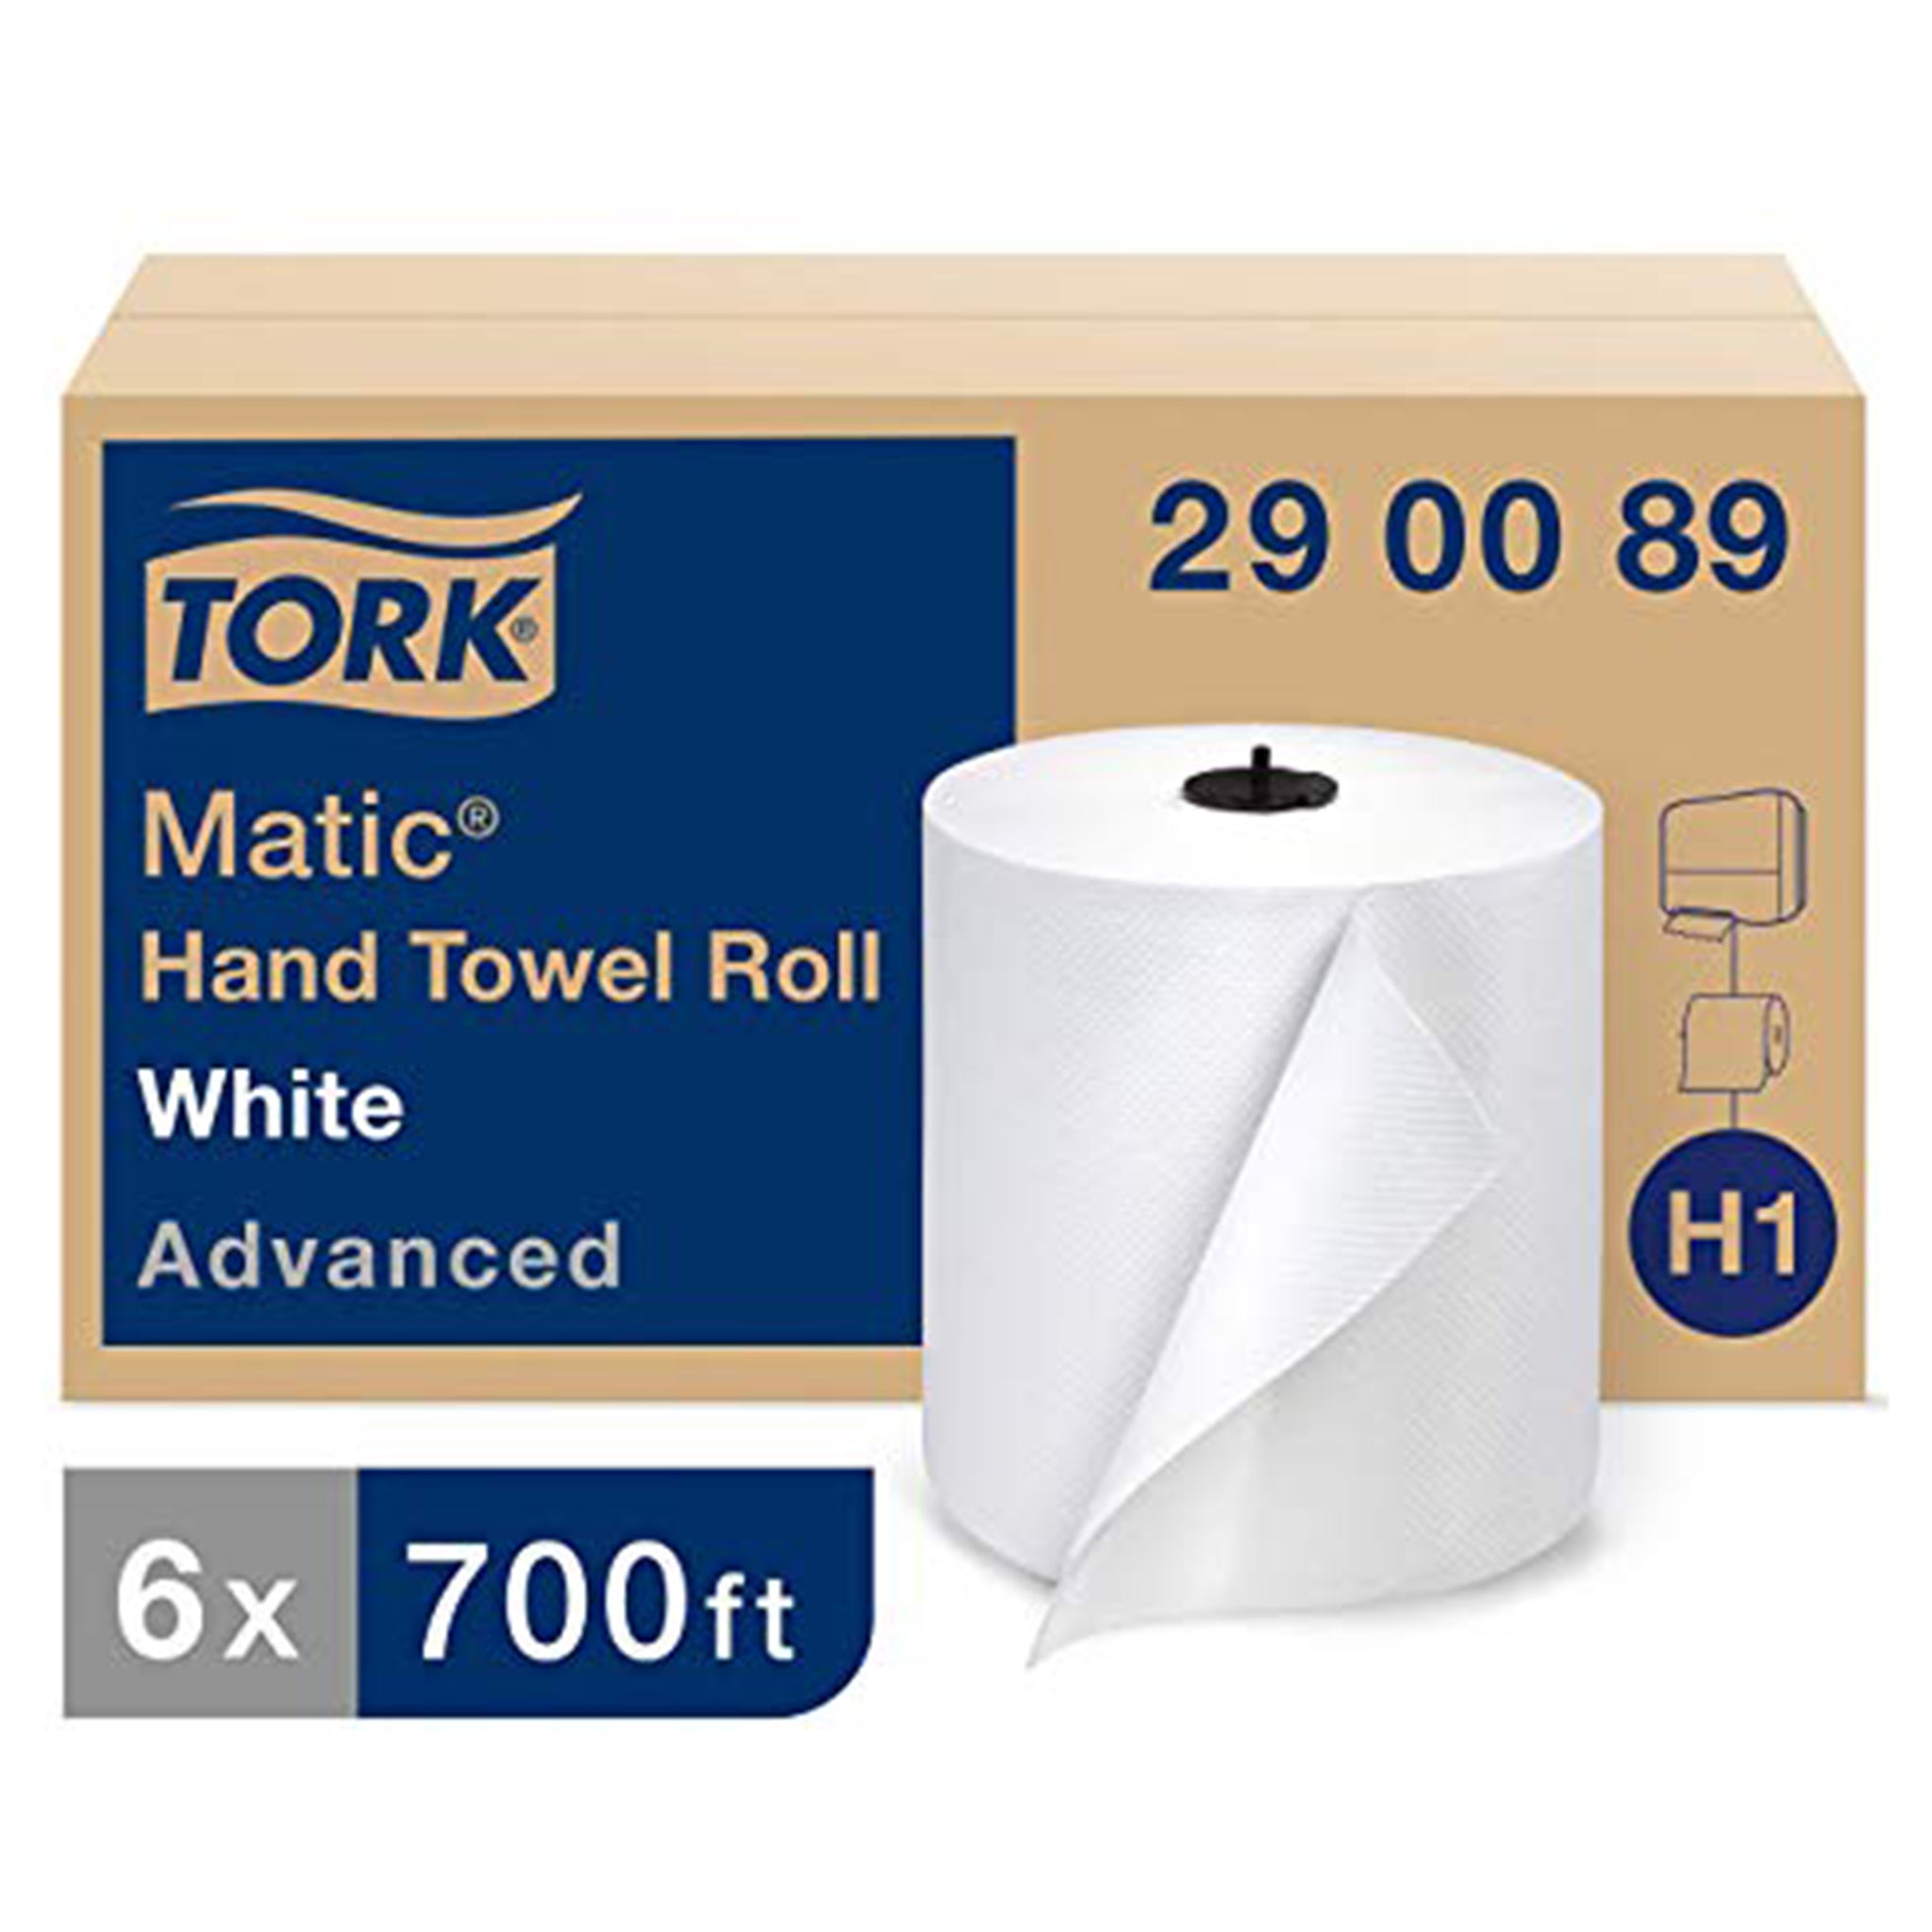 Towel Tork 290089 Roll White 7.75"